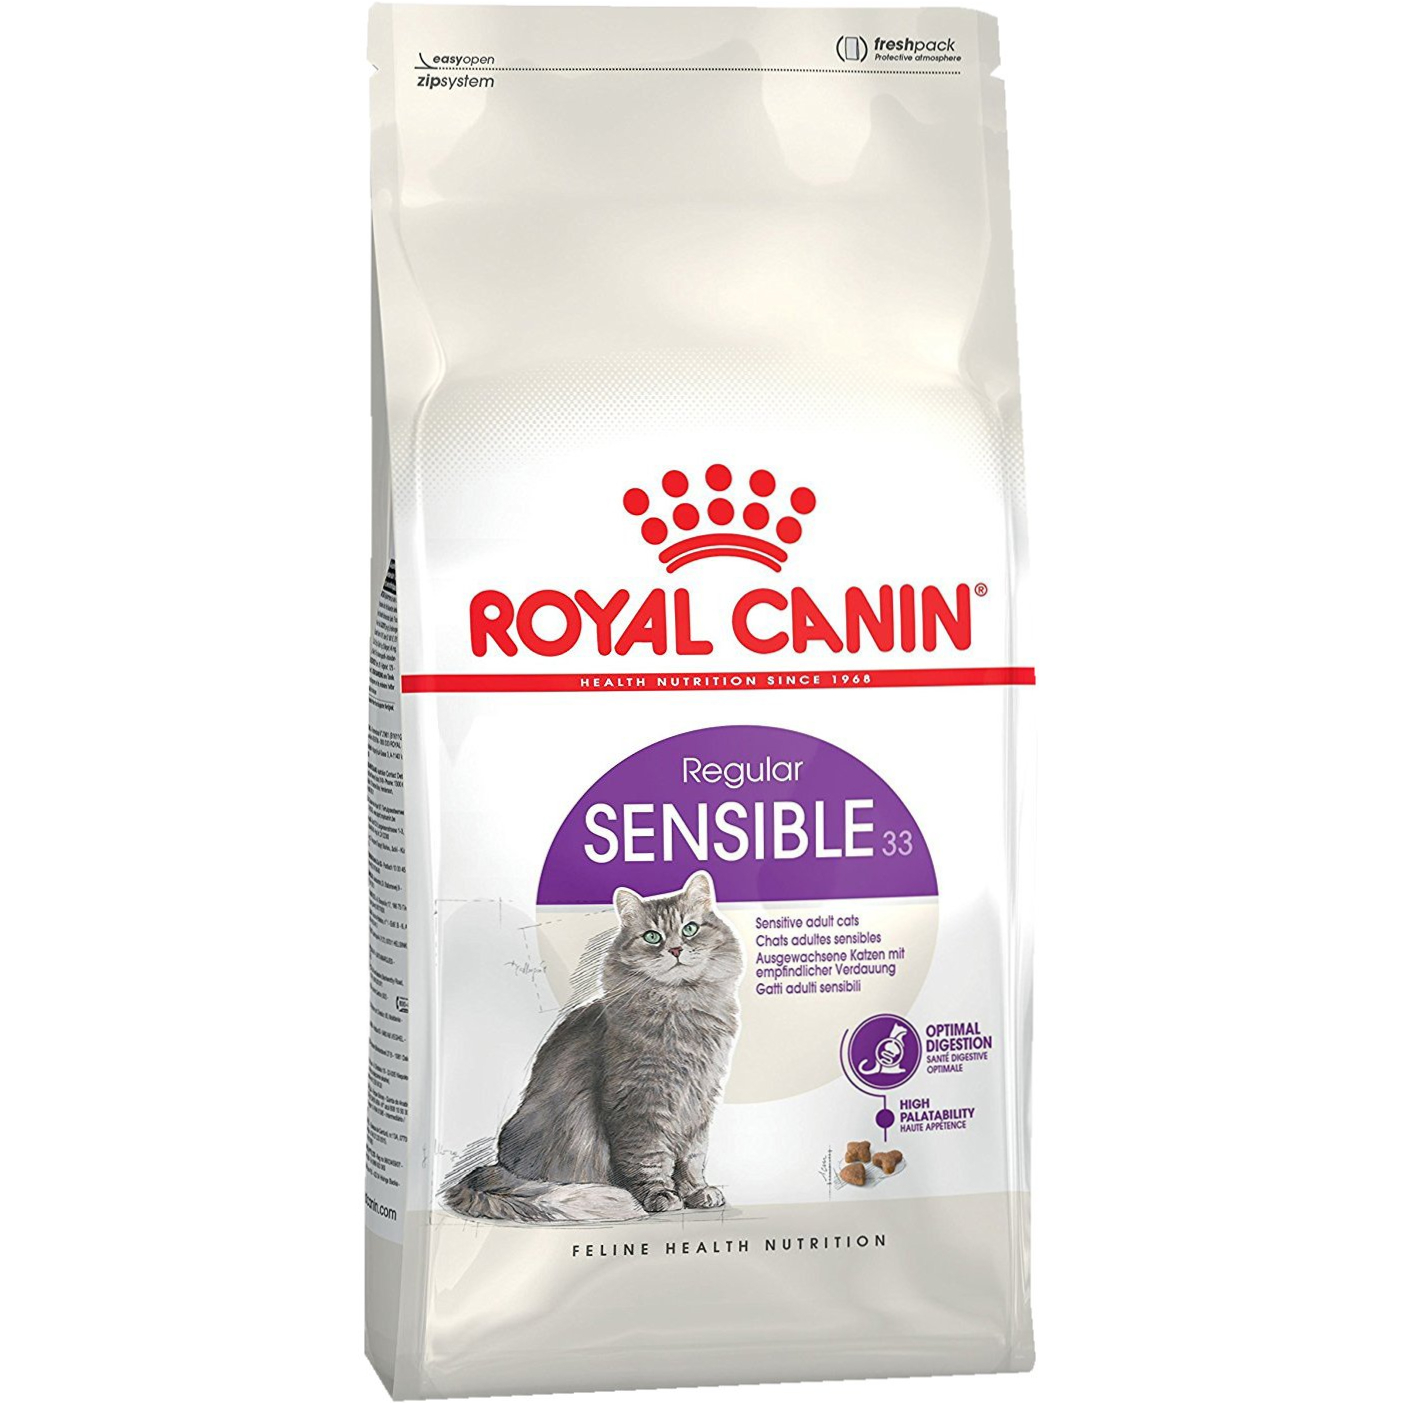 Корм для кошек Royal Canin Sensible 33 с чувствительным пищеварением 1,2 кг корм для кошек royal canin hair